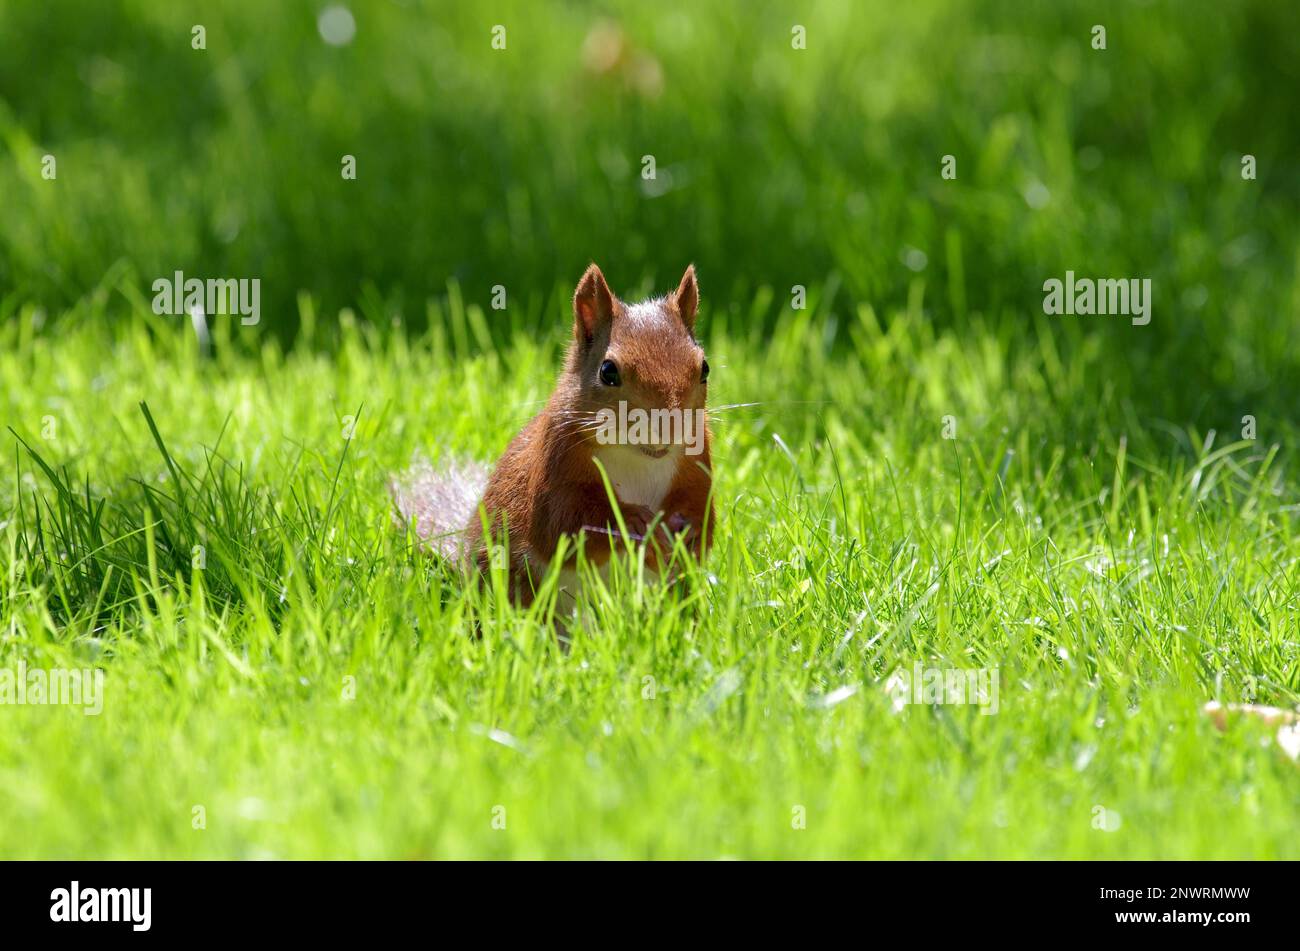 Écureuil (Sciurus), rongeur, tête, herbe, extérieur, L'Allemagne, Un écureuil brun rougeâtre se trouve sous le soleil dans un pré Banque D'Images